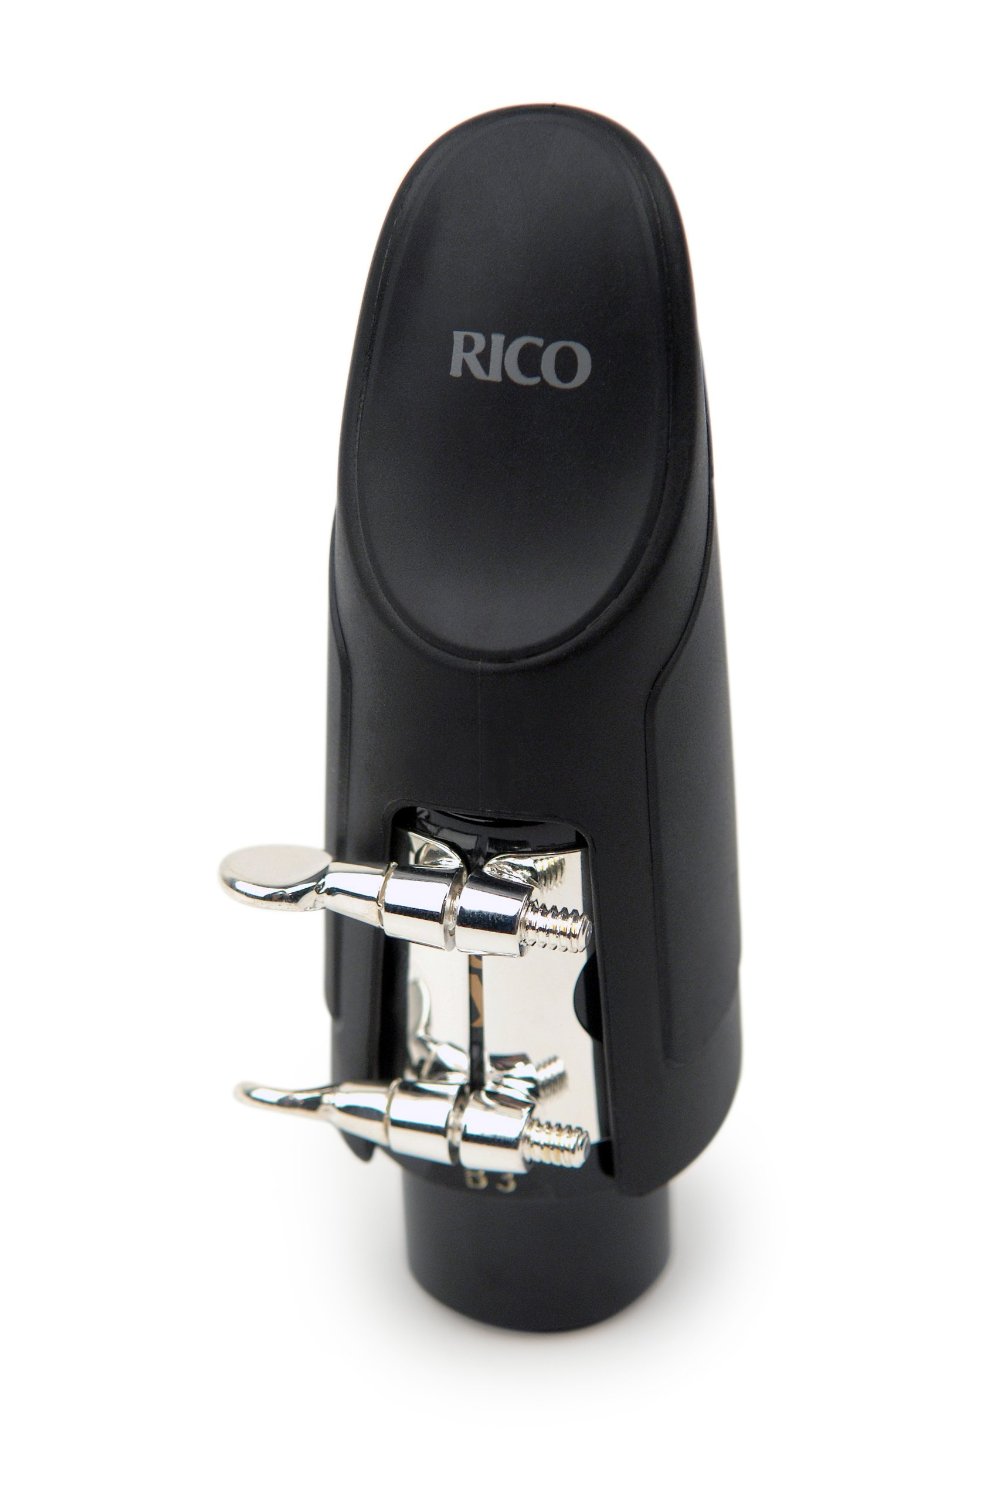 Rico H-ligature & cap for hard rubber alto saxophone mouthpieces